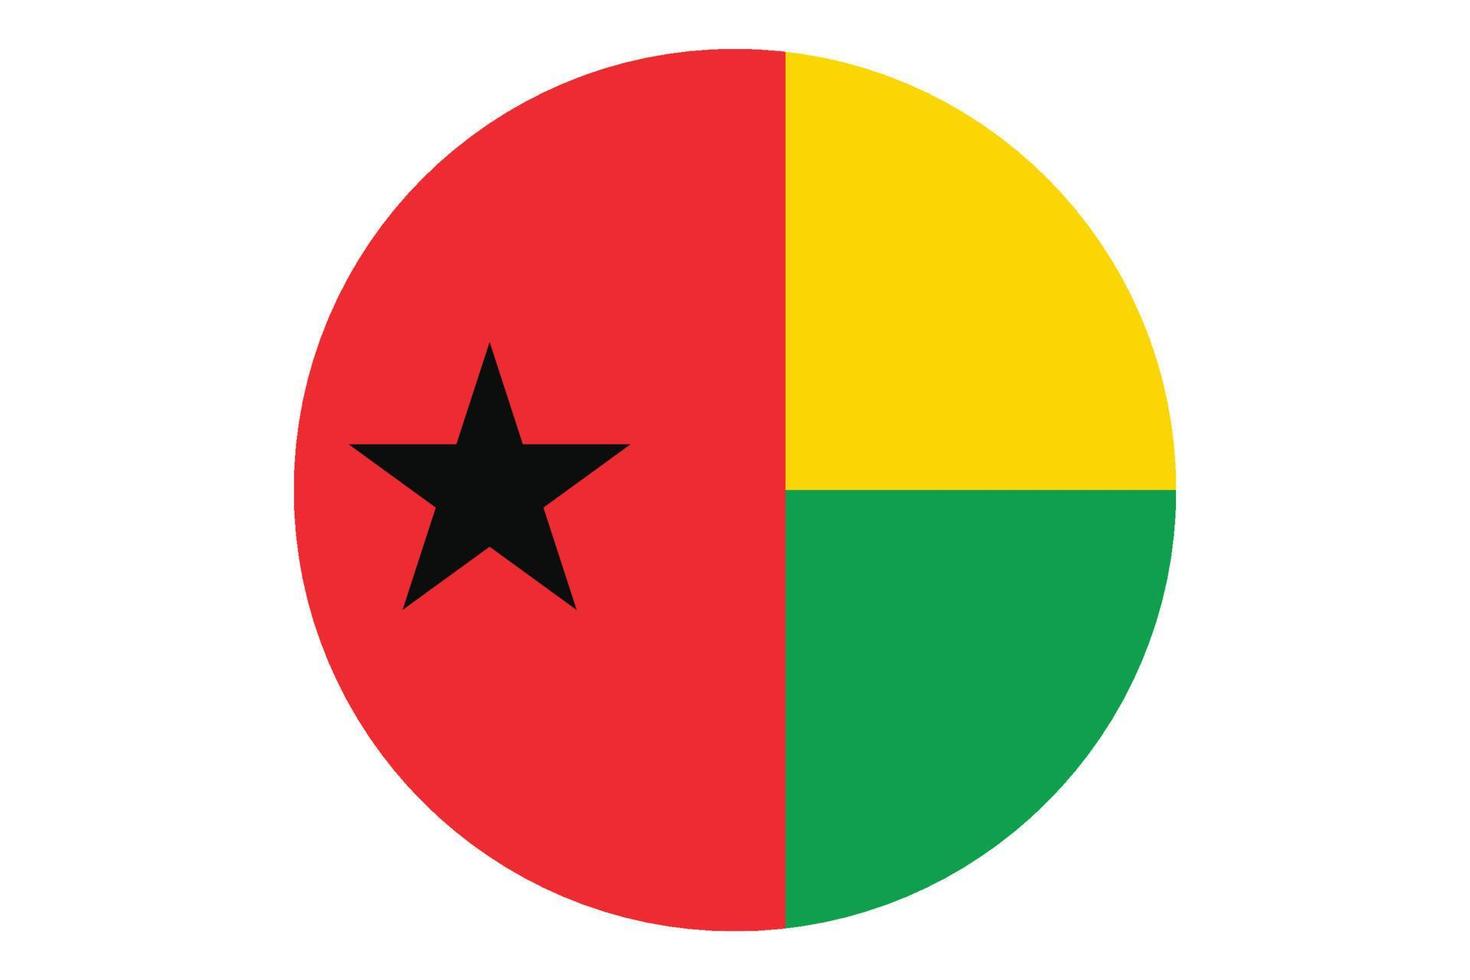 cercle drapeau vecteur de guinée bissau sur fond blanc.